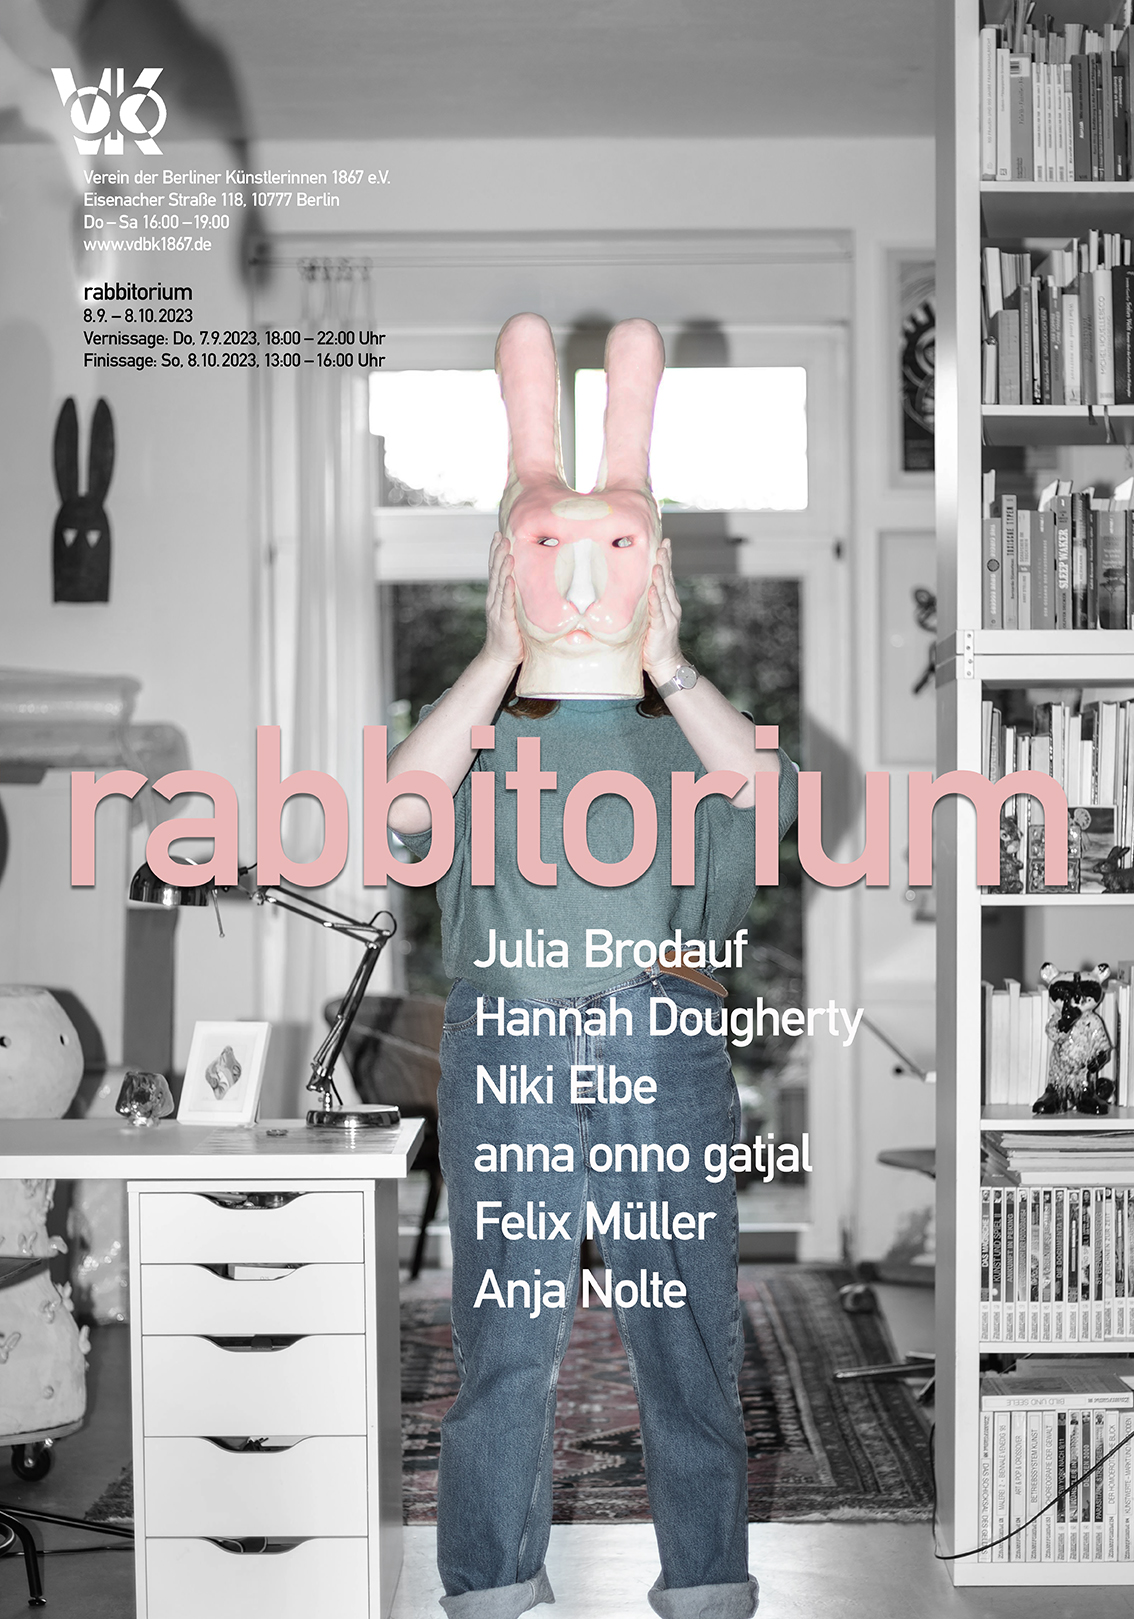 Rabbitorium - About Hares